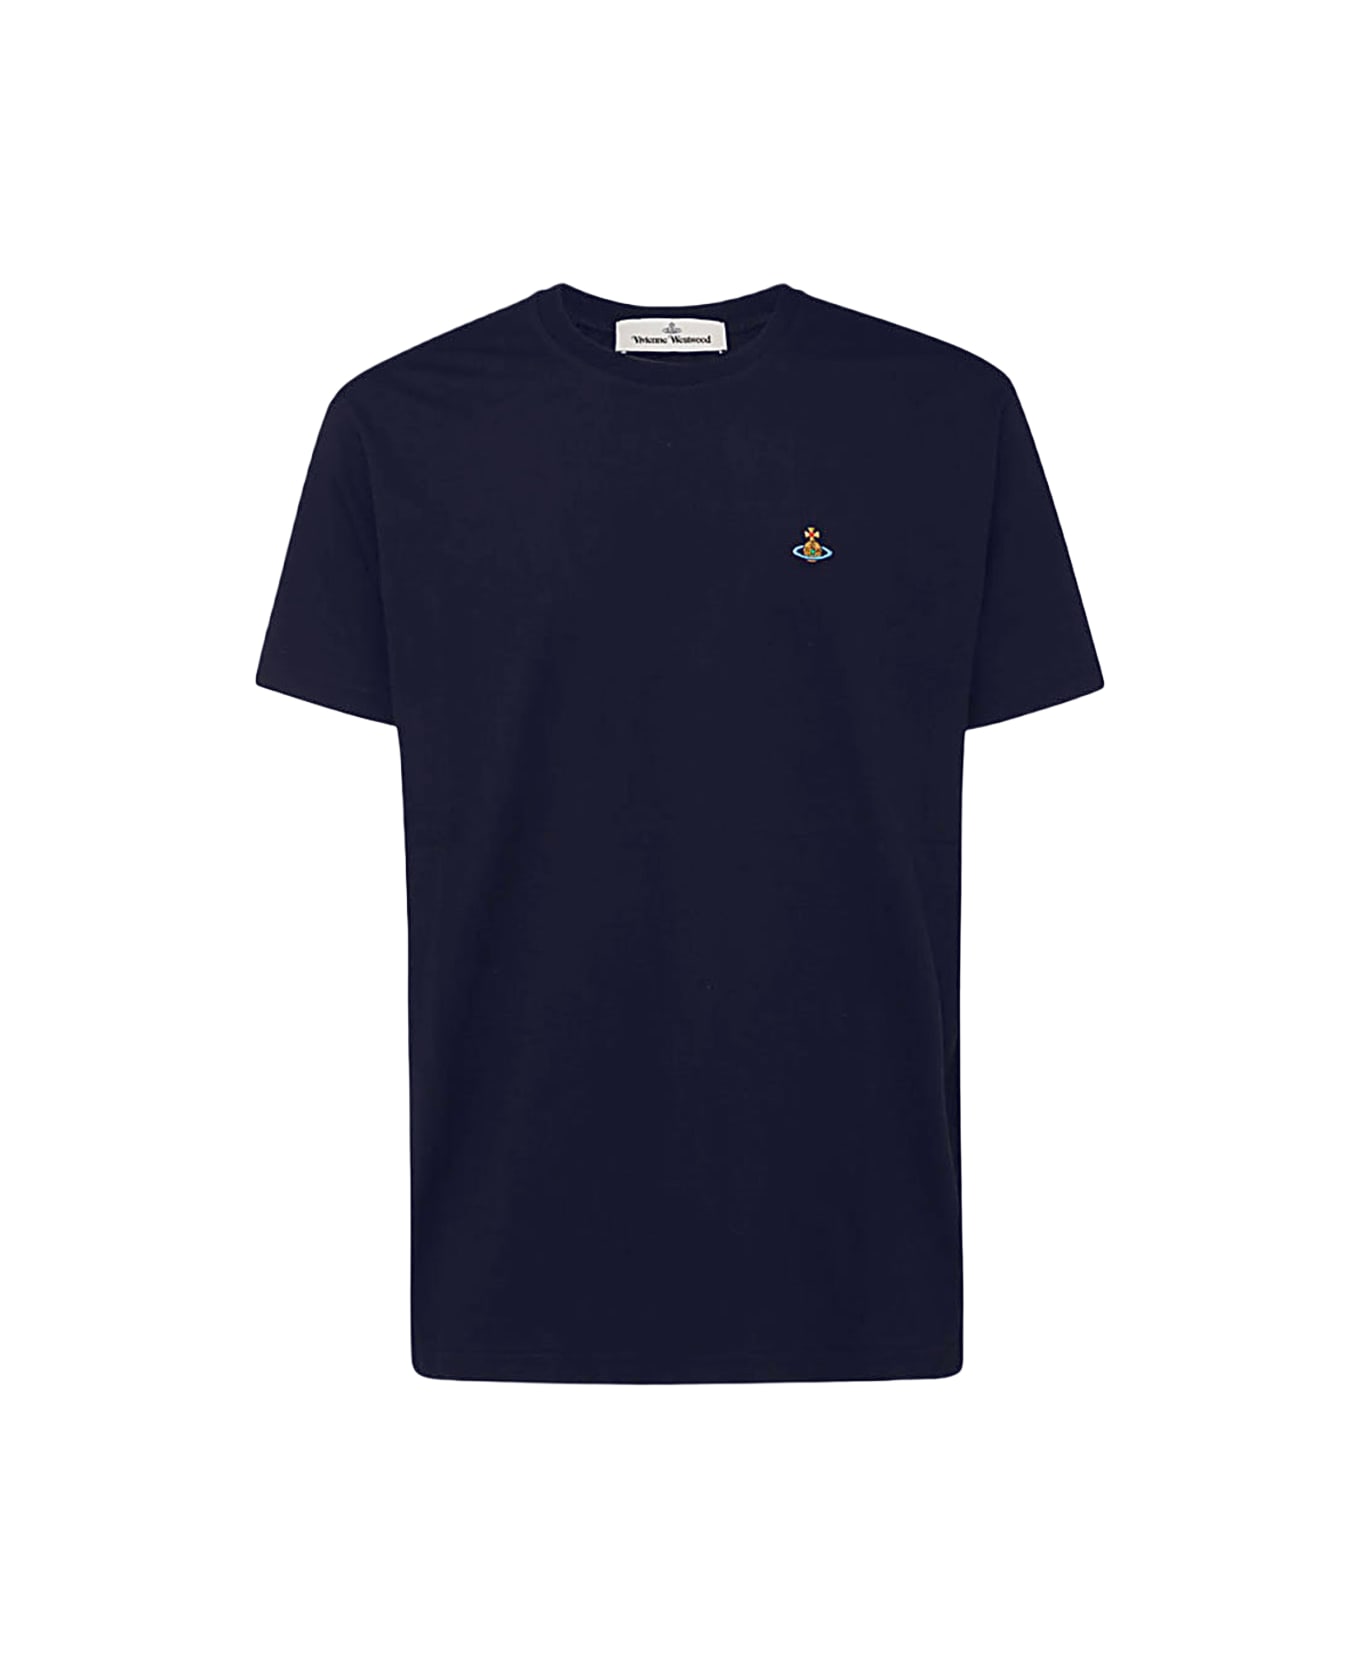 Vivienne Westwood Navy Blue Cotton T-shirt - Blue シャツ